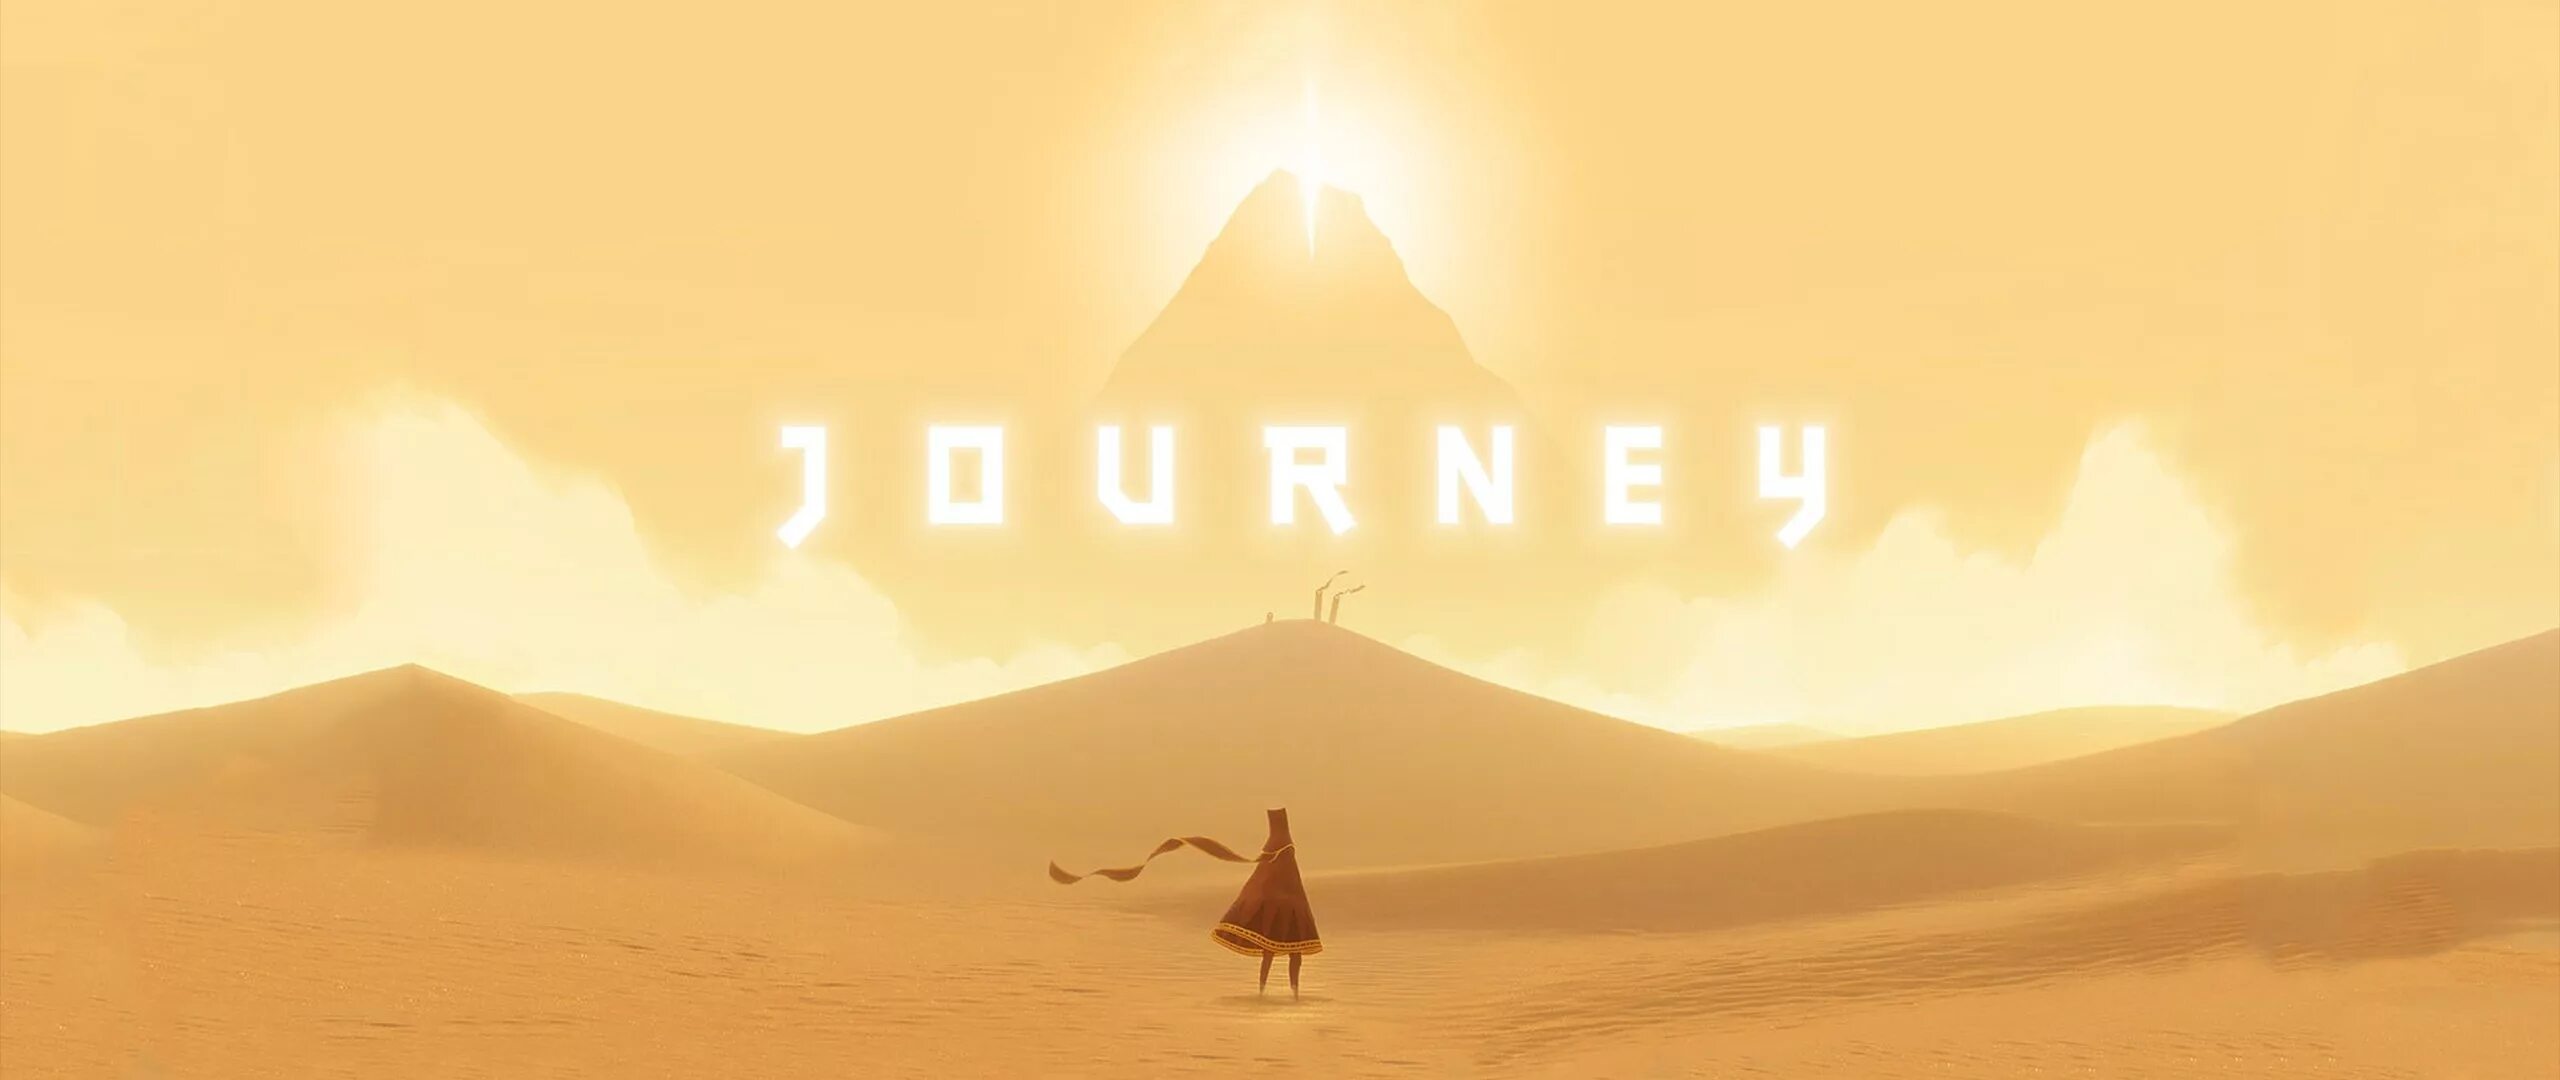 Джорни игра. Journey (игра, 2012). Джорни путешествие игра. Игра про пустыню. May journey